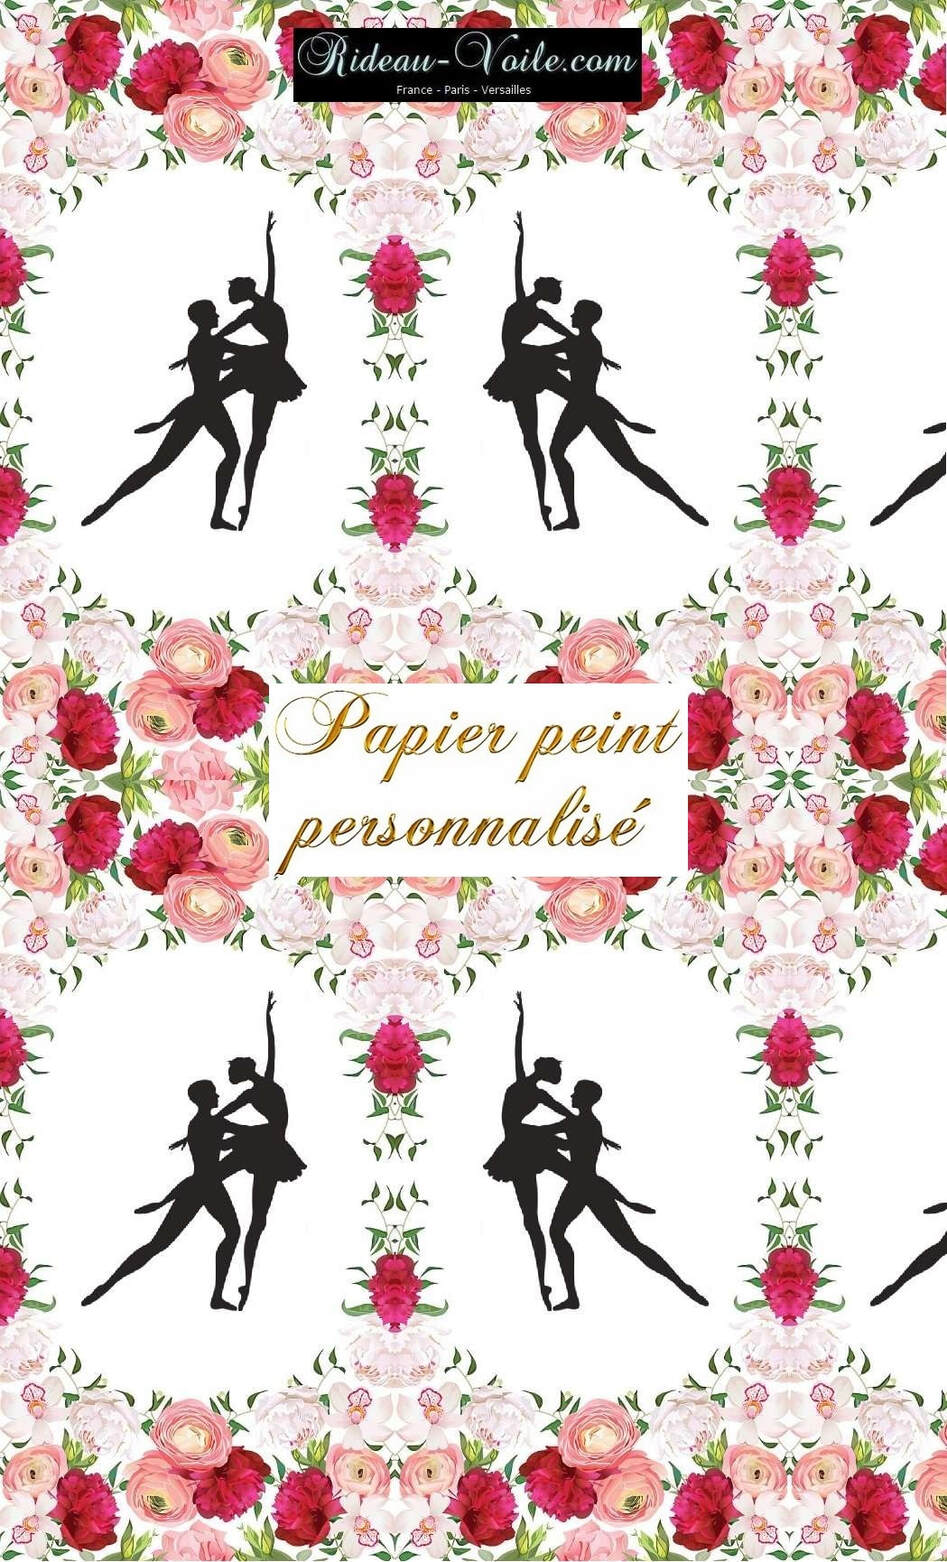 Photo pointe satin rose brillant tissu danseuse danseur motif textile couette rideau coussin fleur fleuris floral bouquet vallerine clasique danse